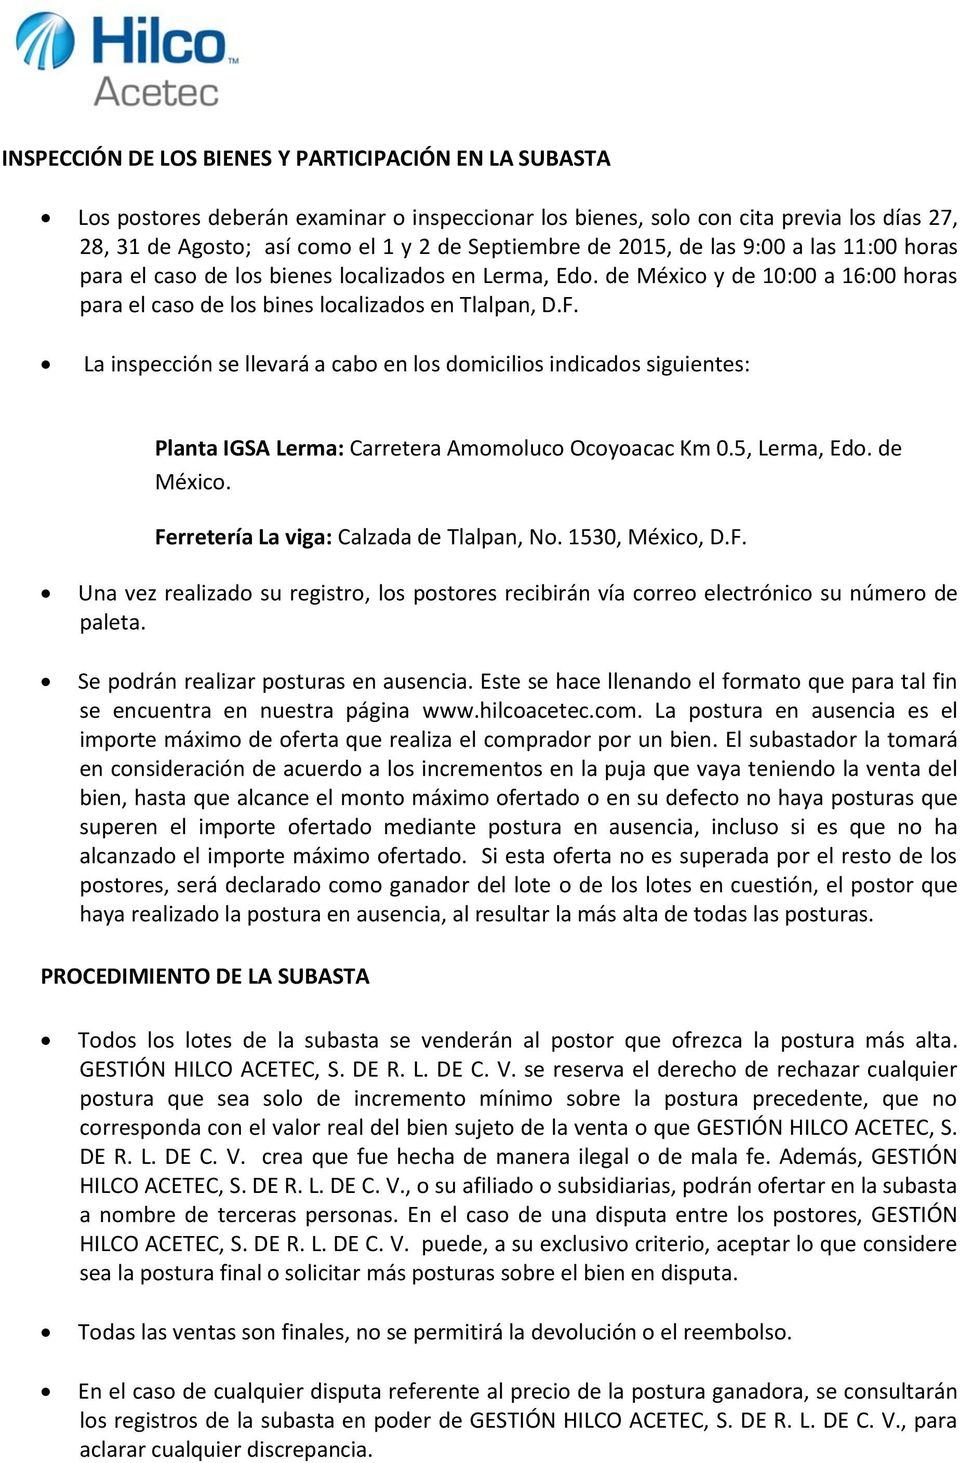 La inspección se llevará a cab en ls dmicilis indicads siguientes: Planta IGSA Lerma: Carretera Ammluc Ocyacac Km 0.5, Lerma, Ed. de Méxic. Fe